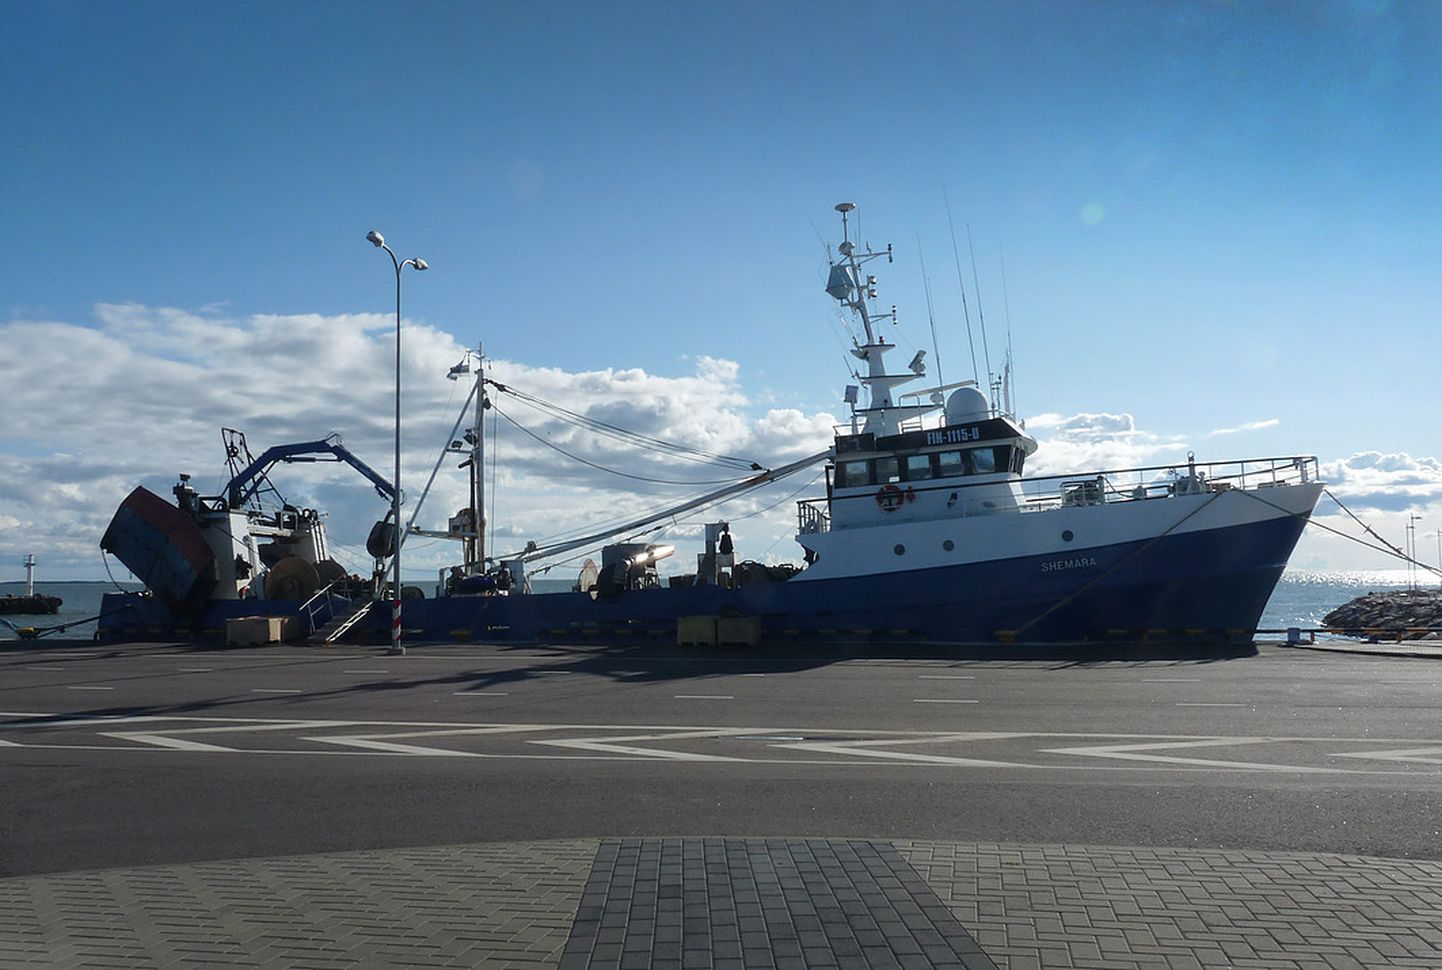 Eesti firma Morobell kalalaev Shemara 2018. aastal